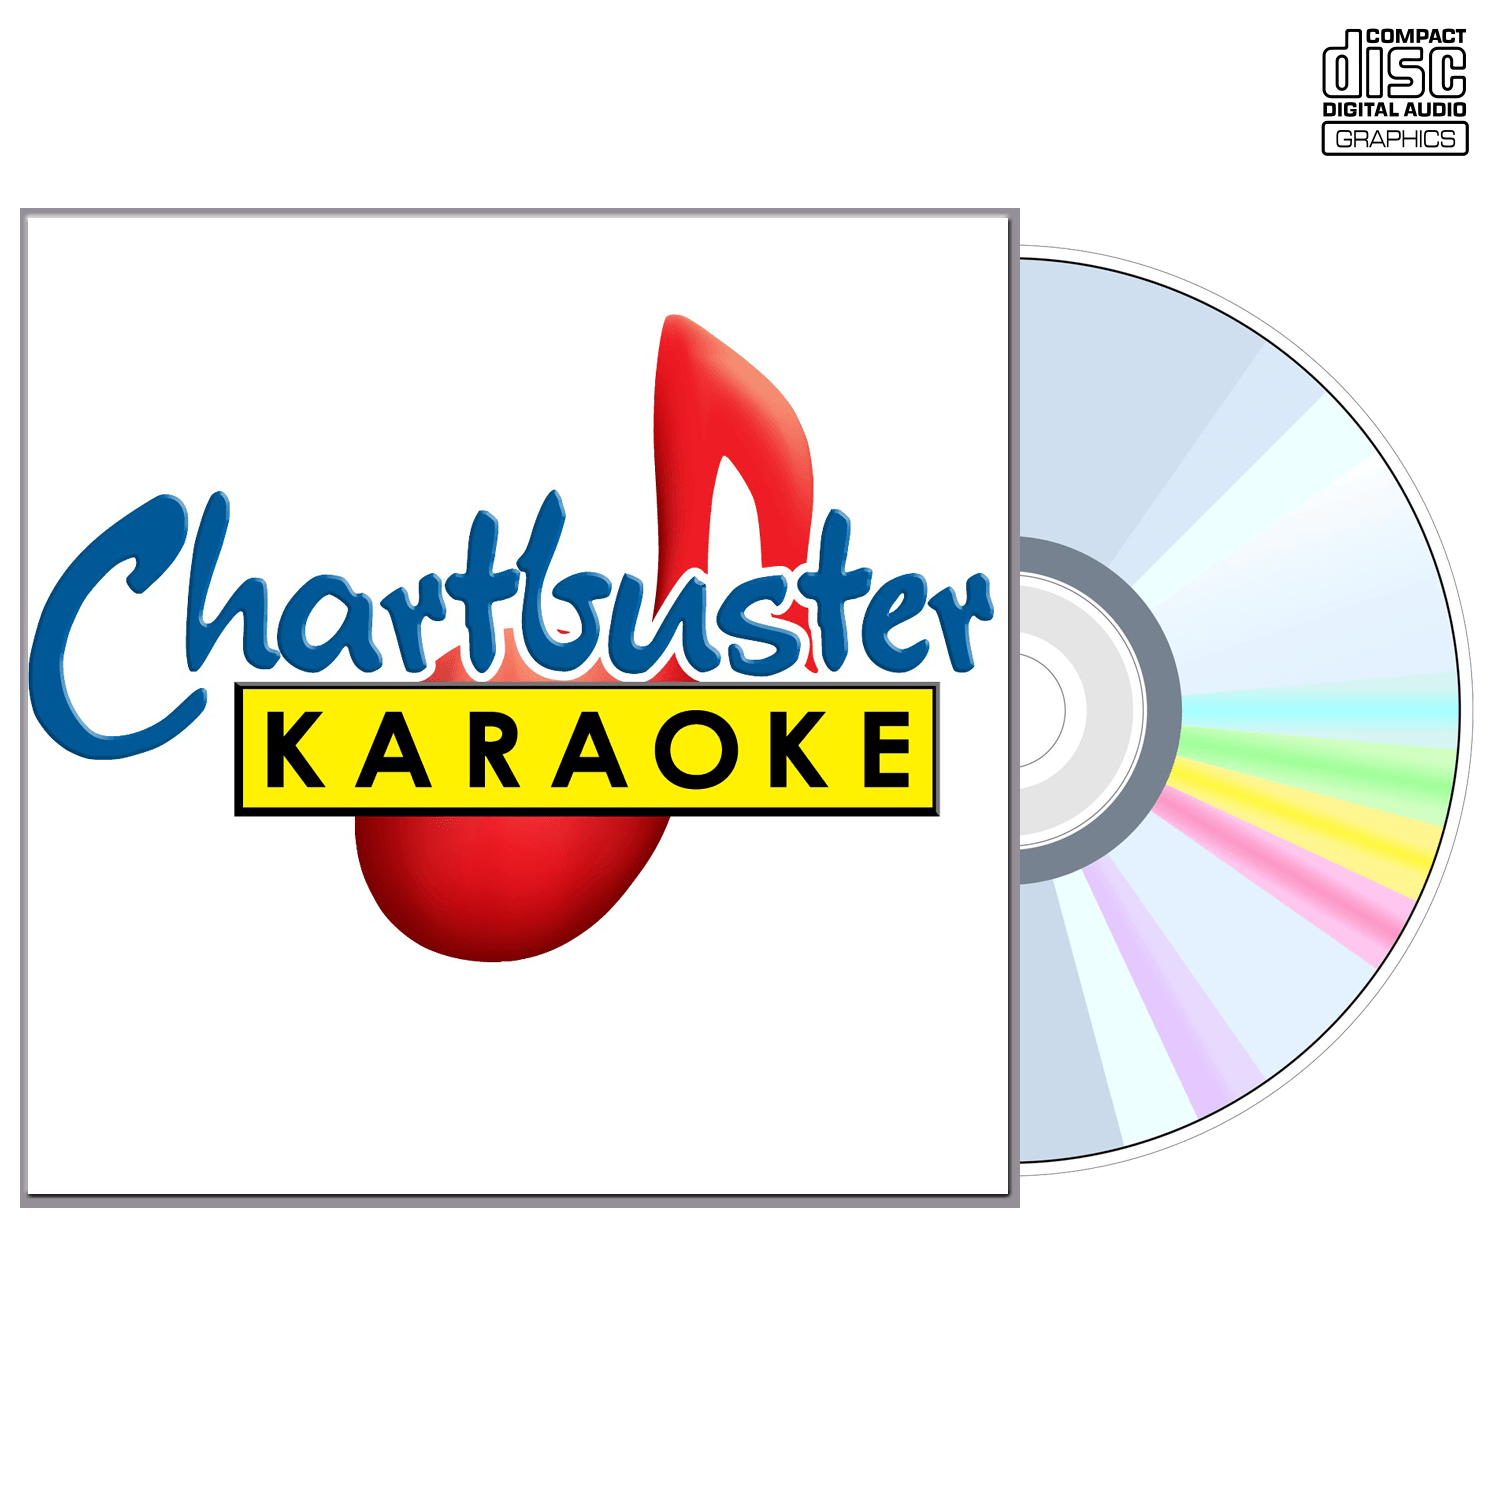 Robin Thicke - CD+G - Chartbuster Karaoke - Karaoke Home Entertainment